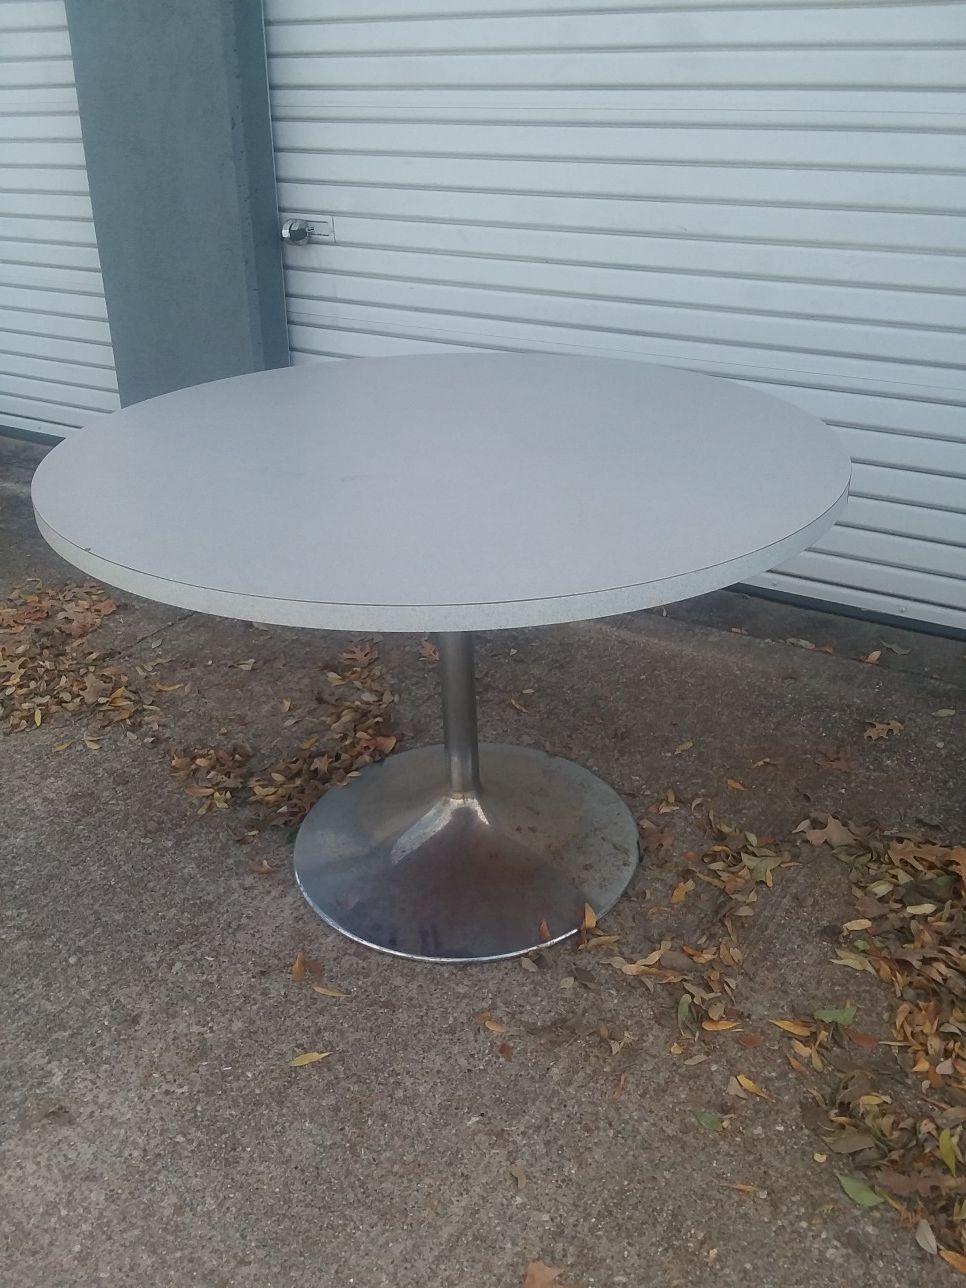 Vintage Industrial 44" Round Formica Steel Metal Pedastal Dining Table